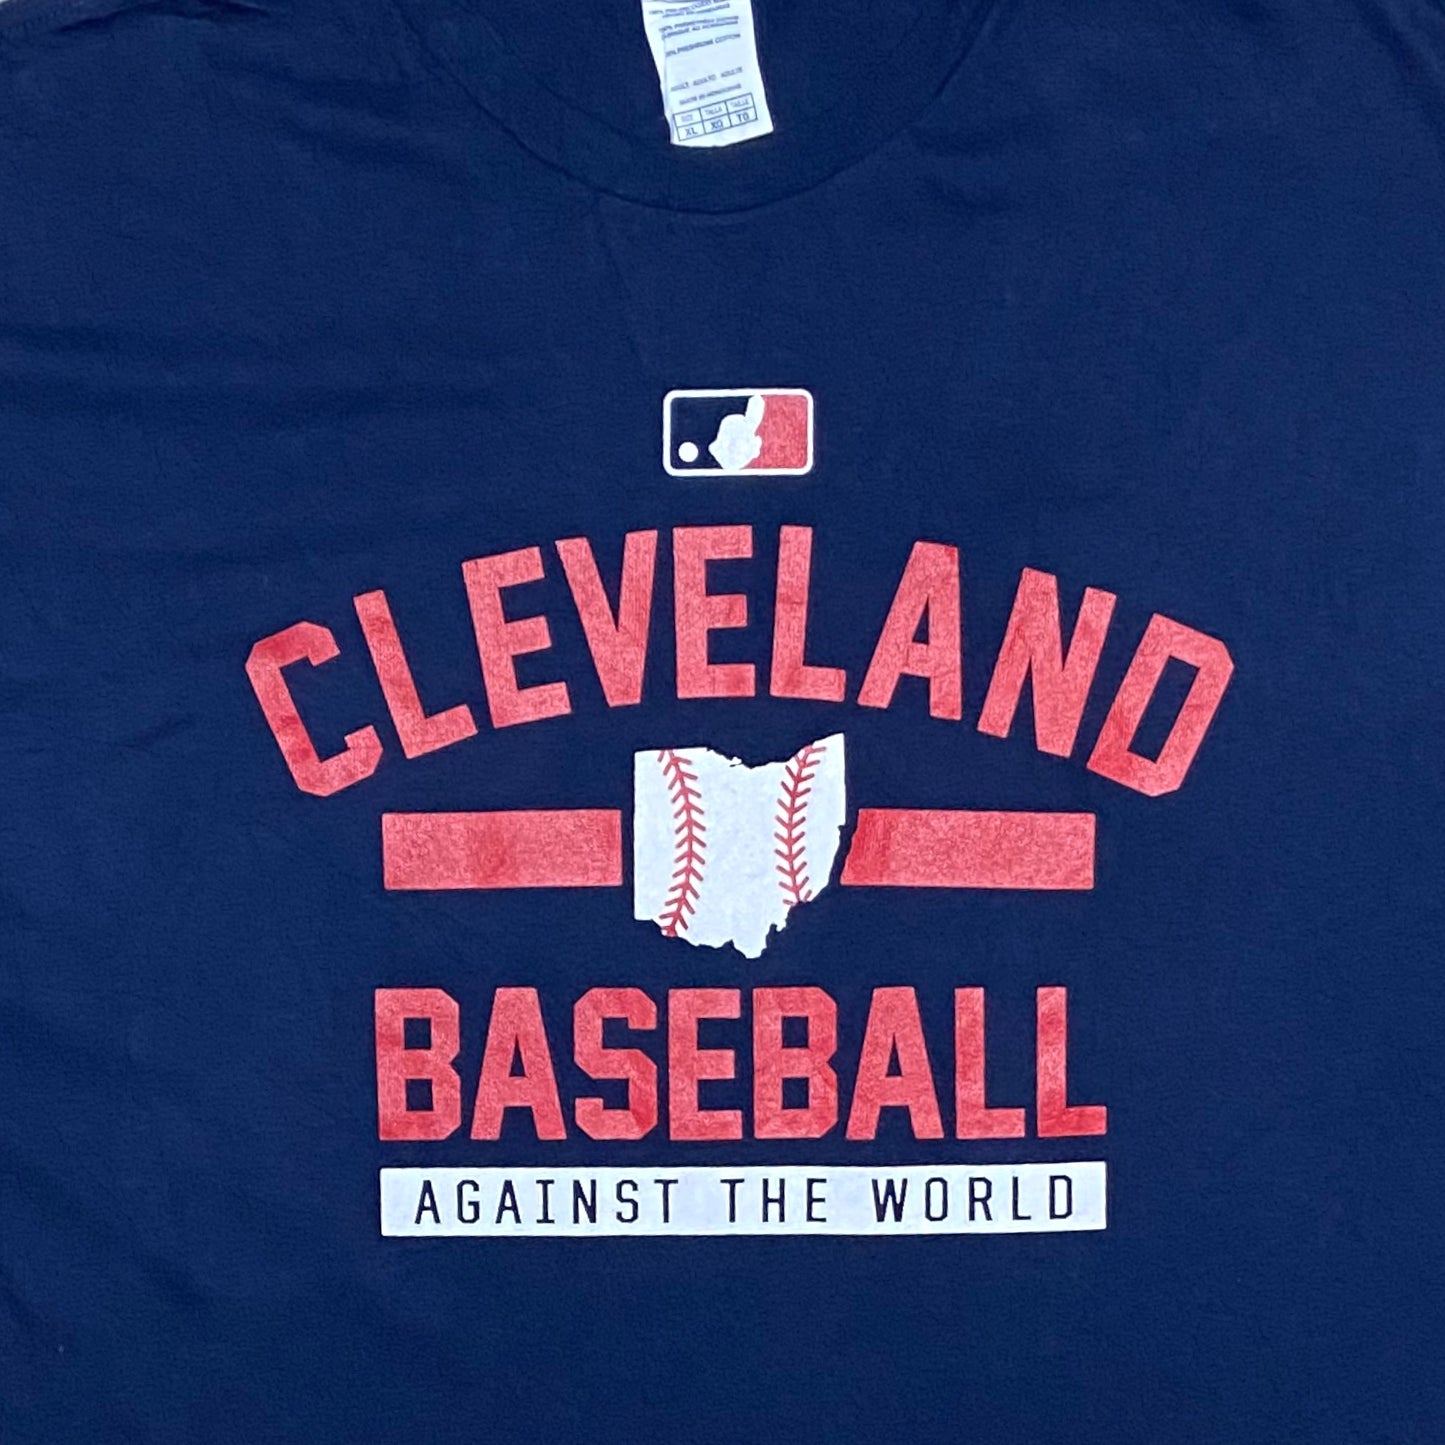 Cleveland Baseball T-Shirt - XL